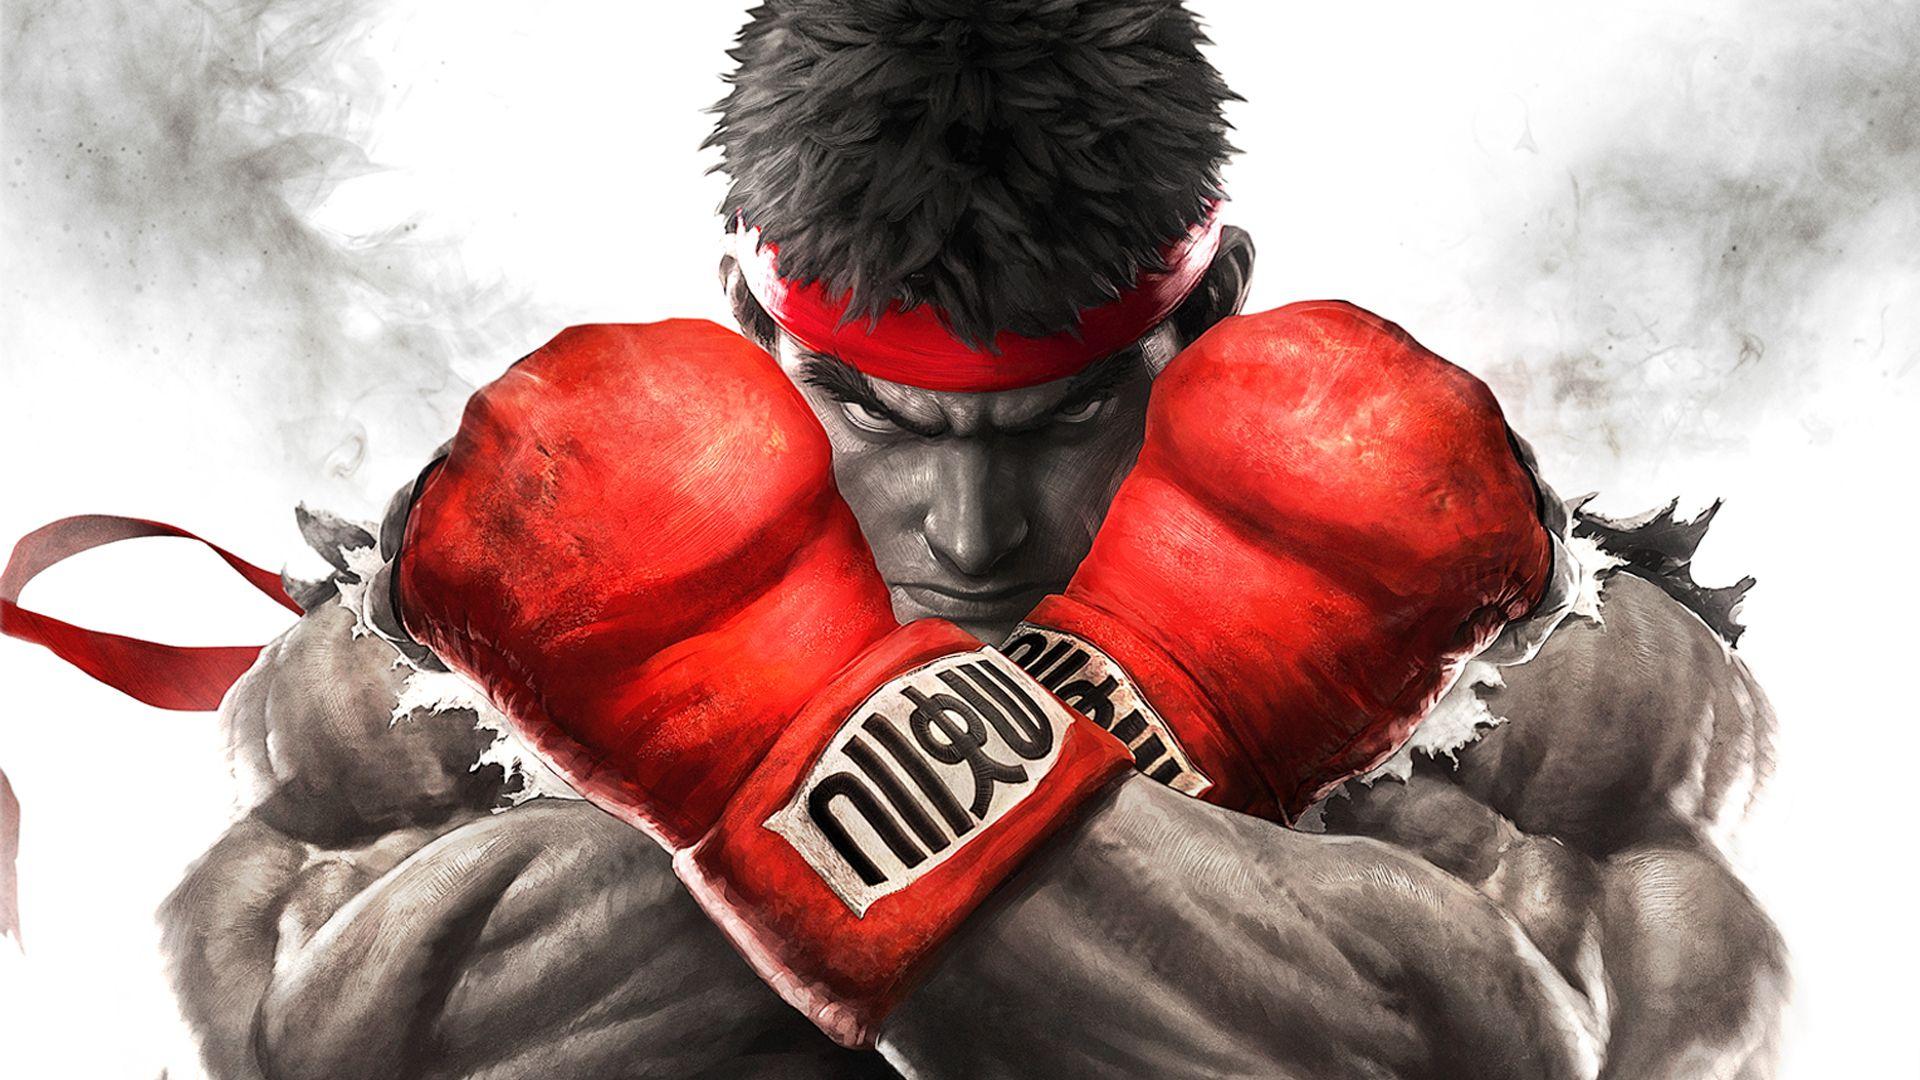 Street Fighter Ryu Wallpaper Widescreen On Wallpaper 1080p HD